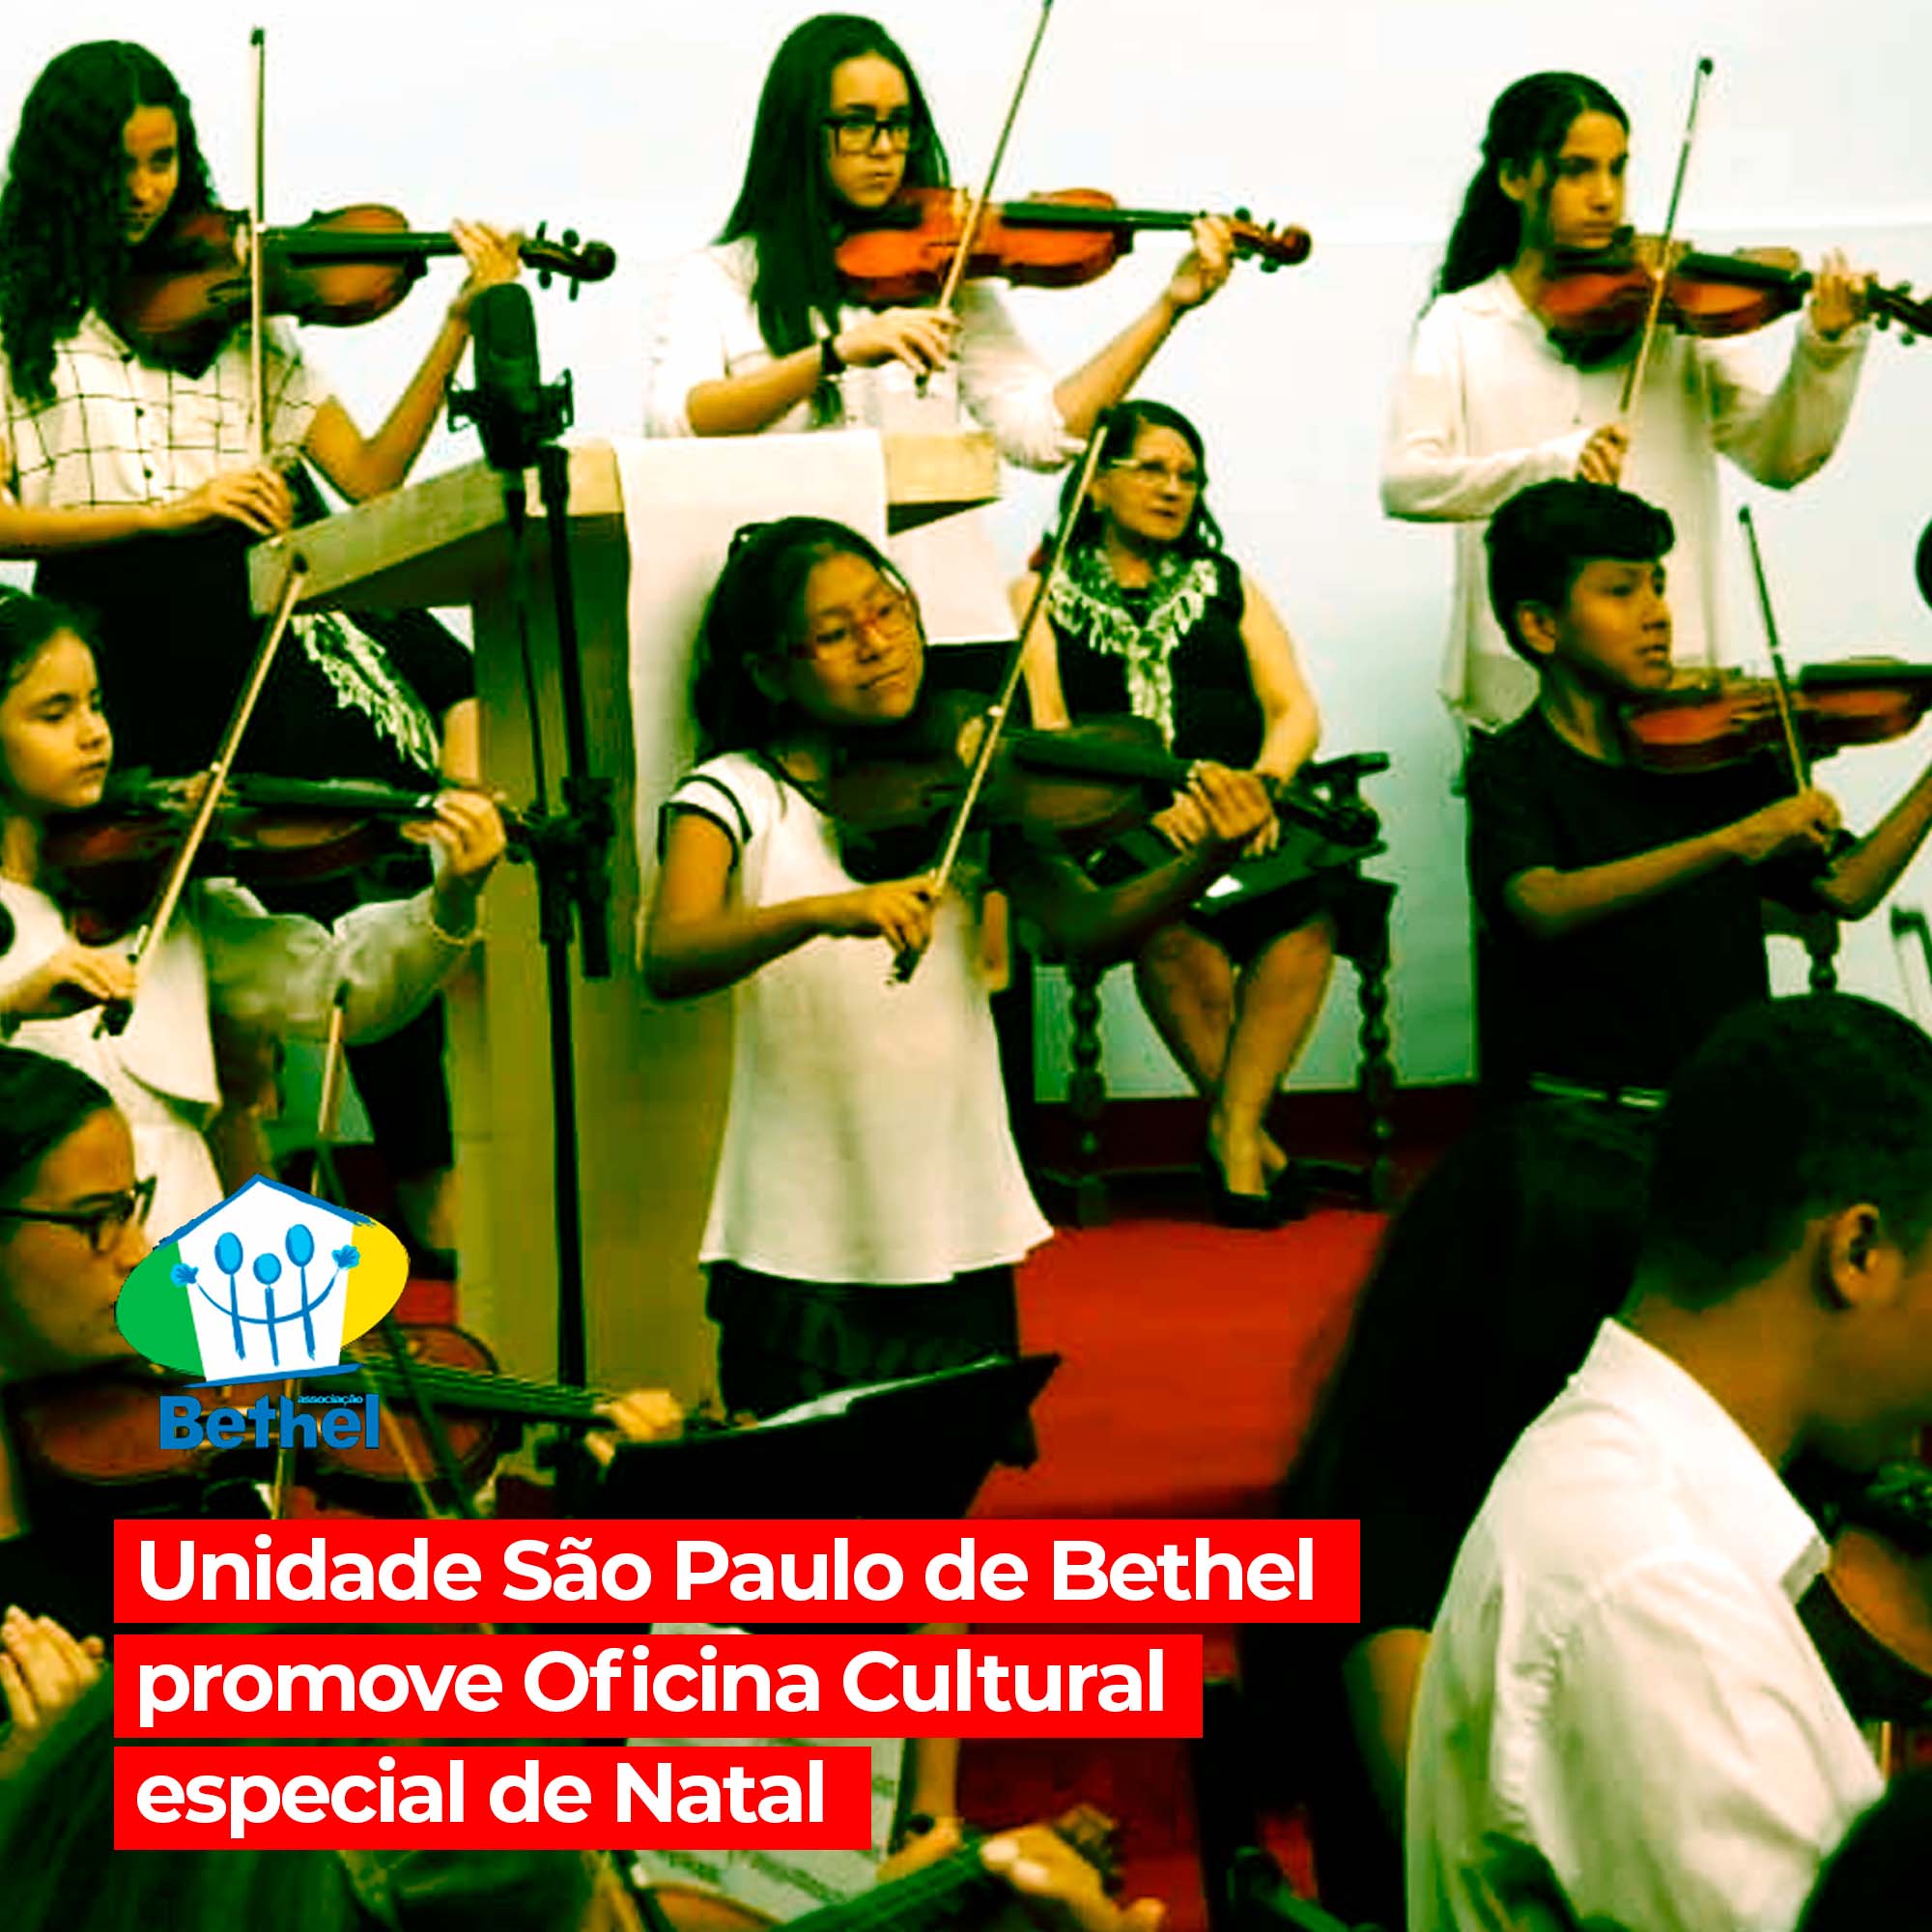 Unidade São Paulo de Bethel promove evento